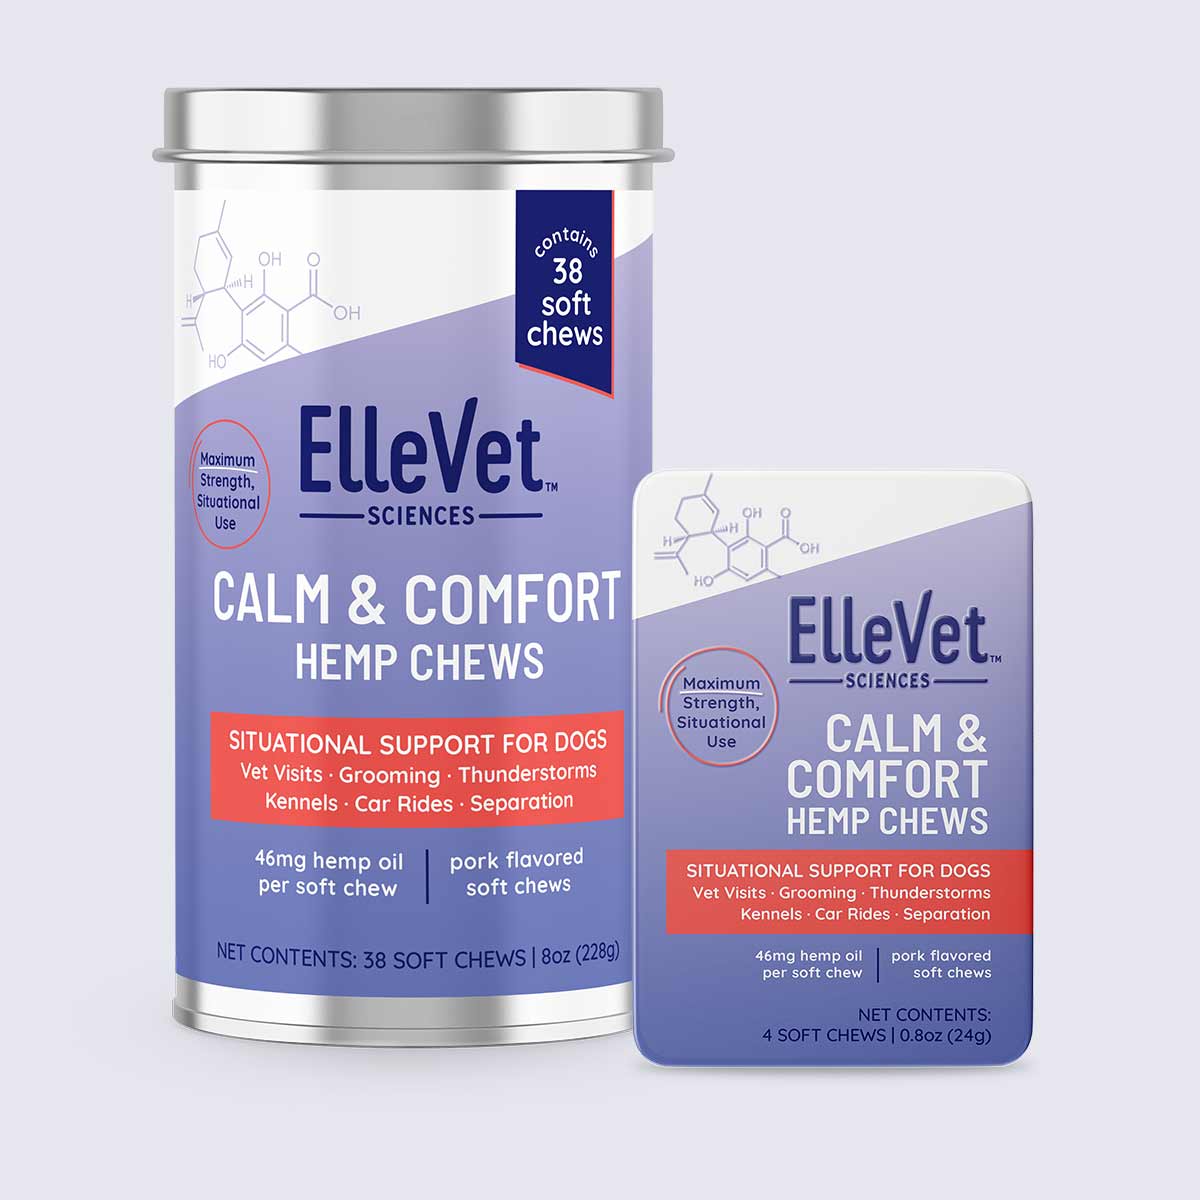 ElleVet’s Calm and Comfort Chews